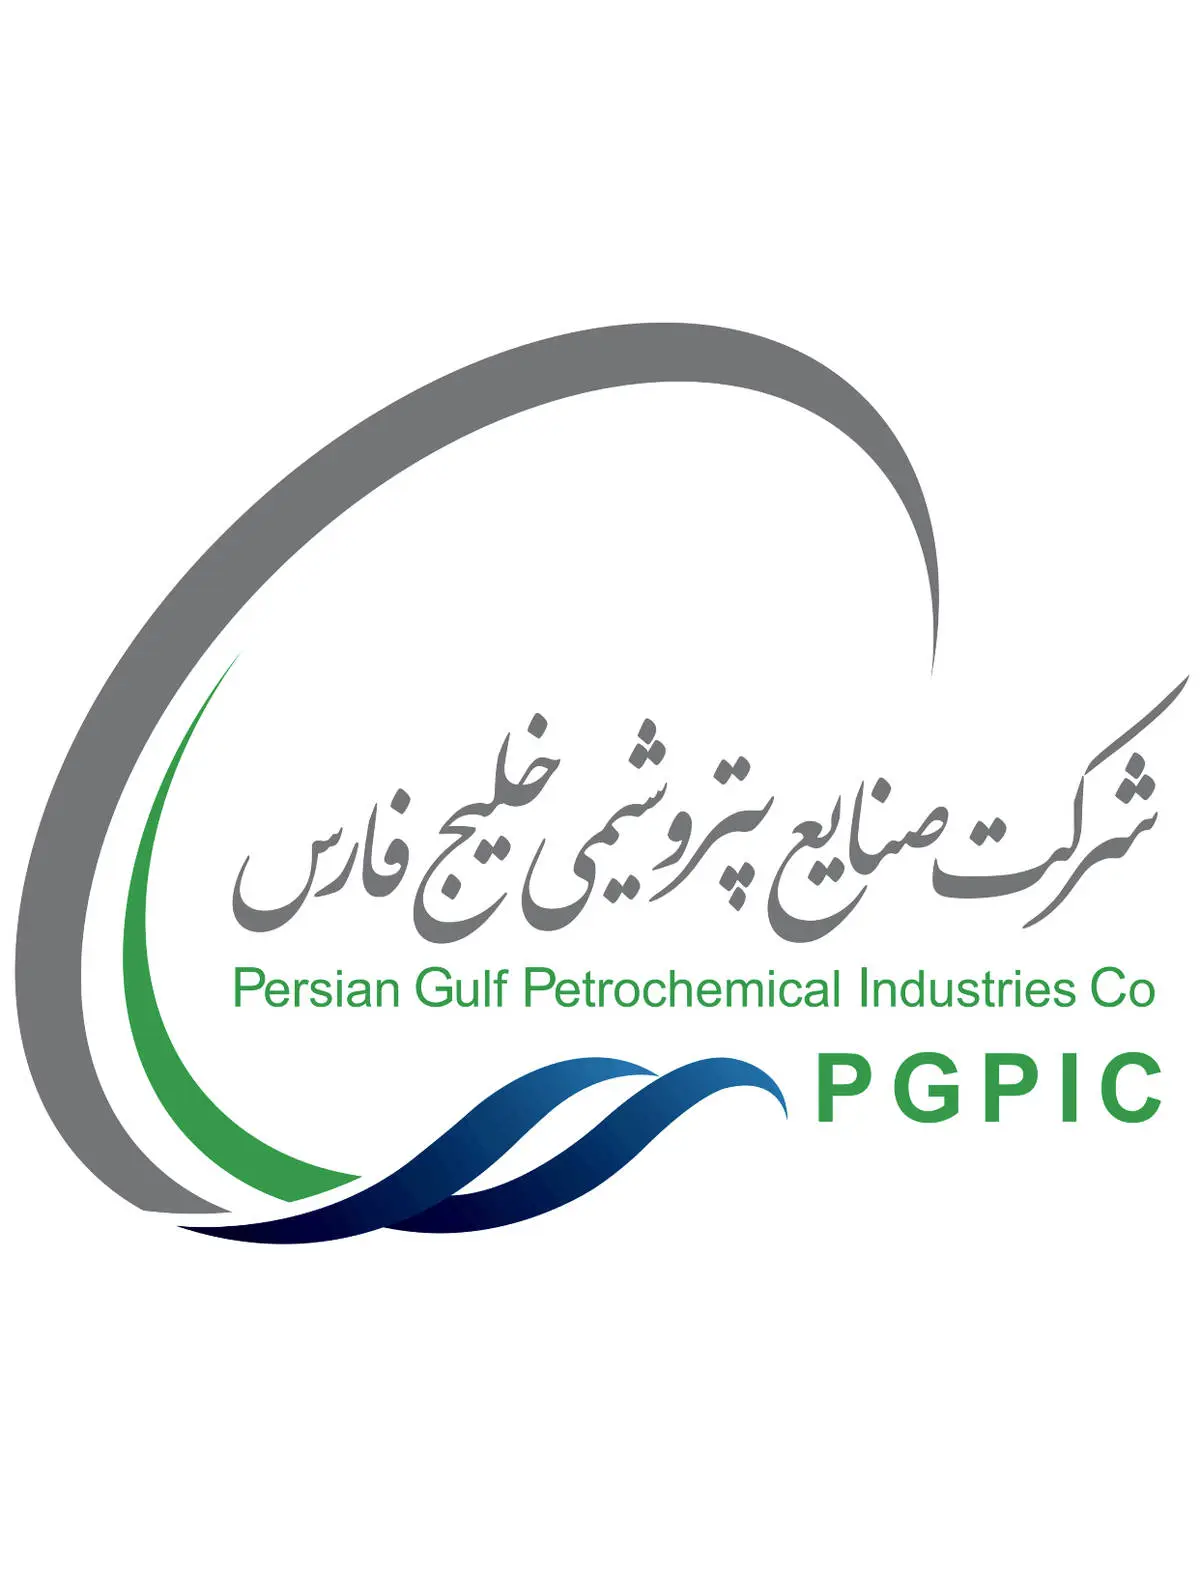 مجوز افزایش سرمایه شرکت صنایع پتروشیمی خلیج فارس صادر شد